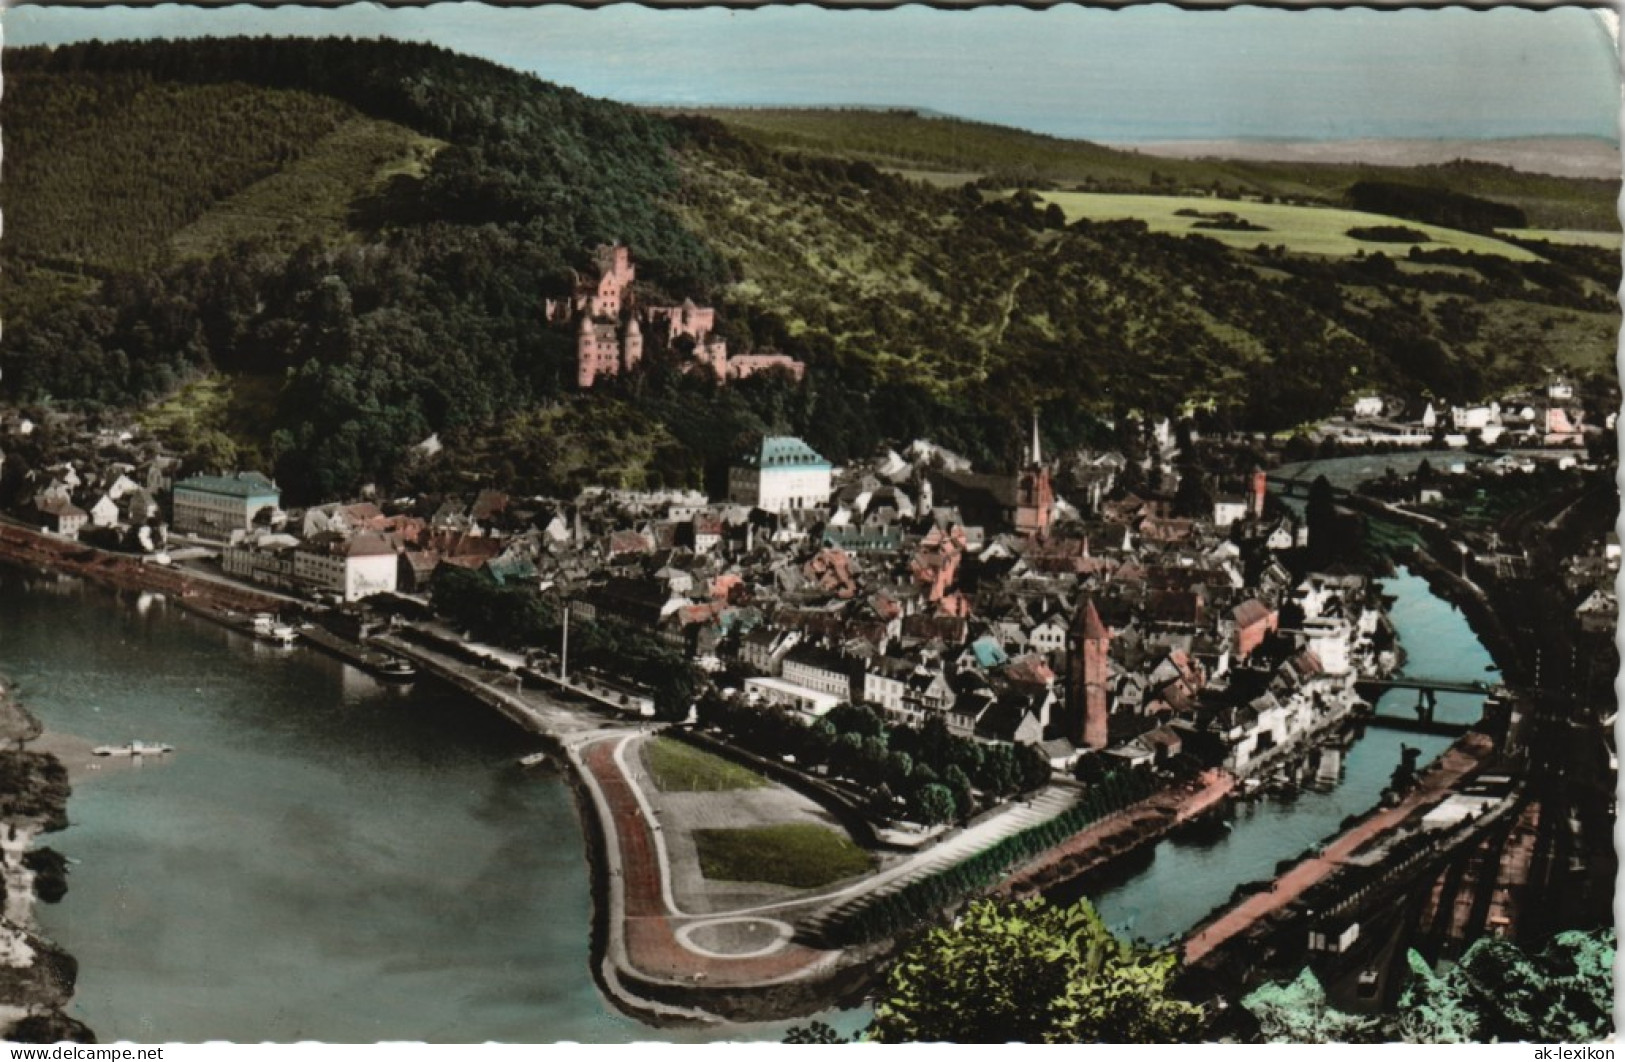 Ansichtskarte Wertheim Total 1958 - Wertheim